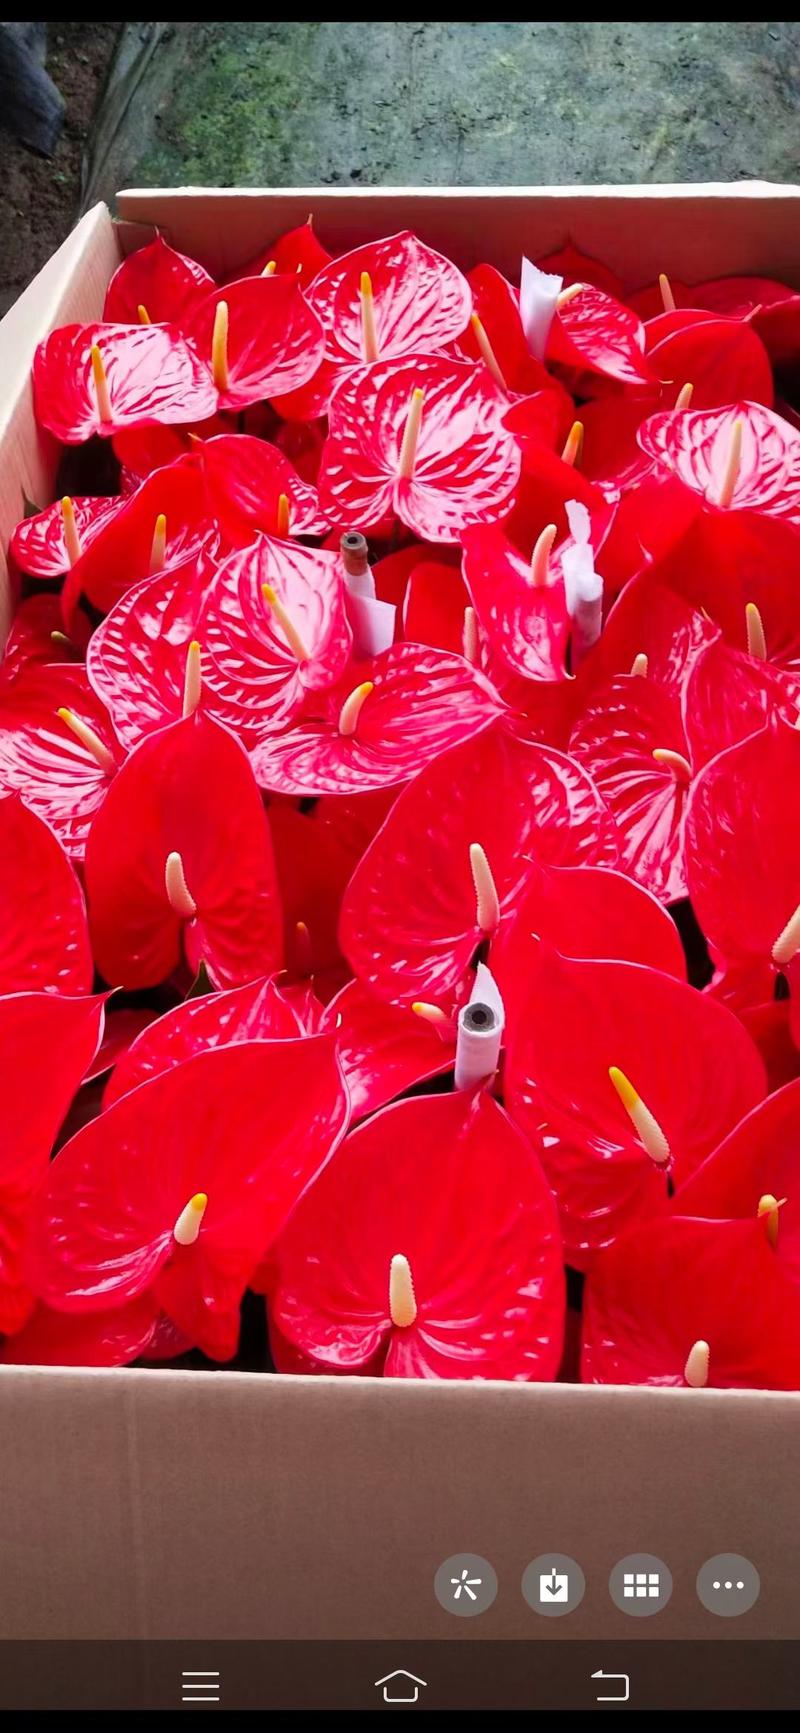 红掌多品种室内外观赏布景青州花卉基地